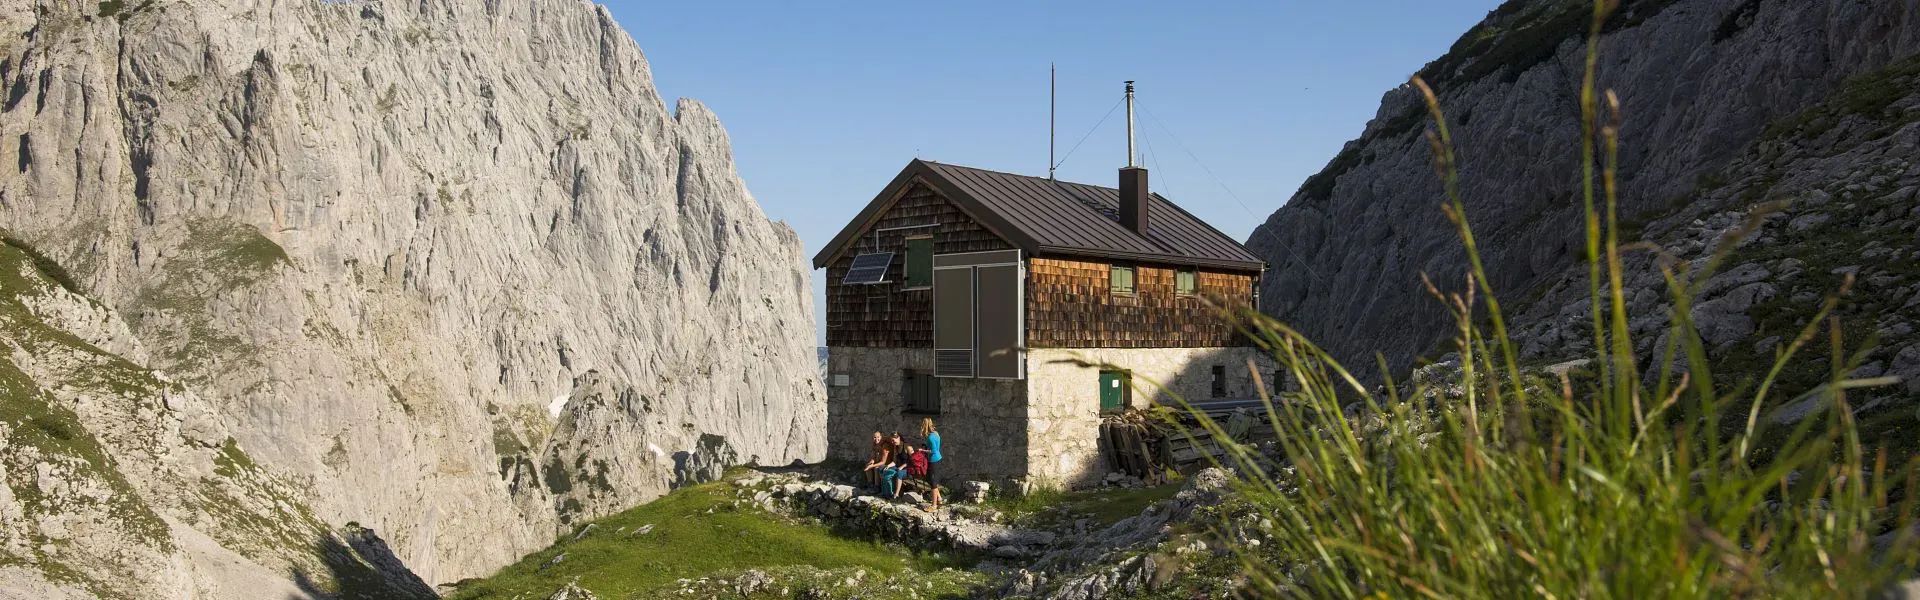 Fritz Pflaum Hütte am Wilden Kaiser - Region St. Johann in Tirol